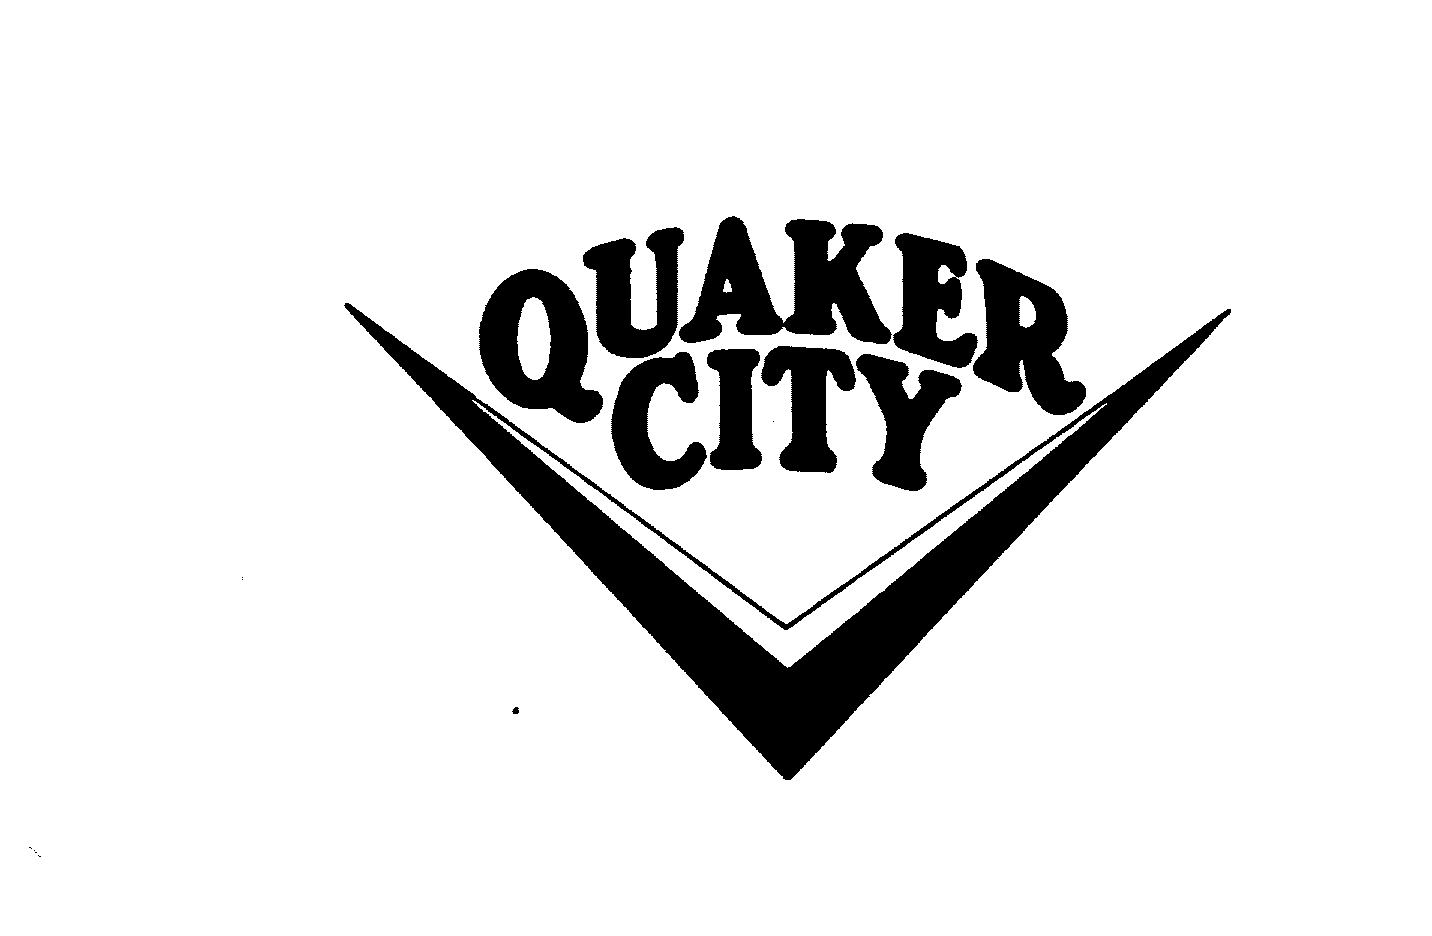  QUAKER CITY